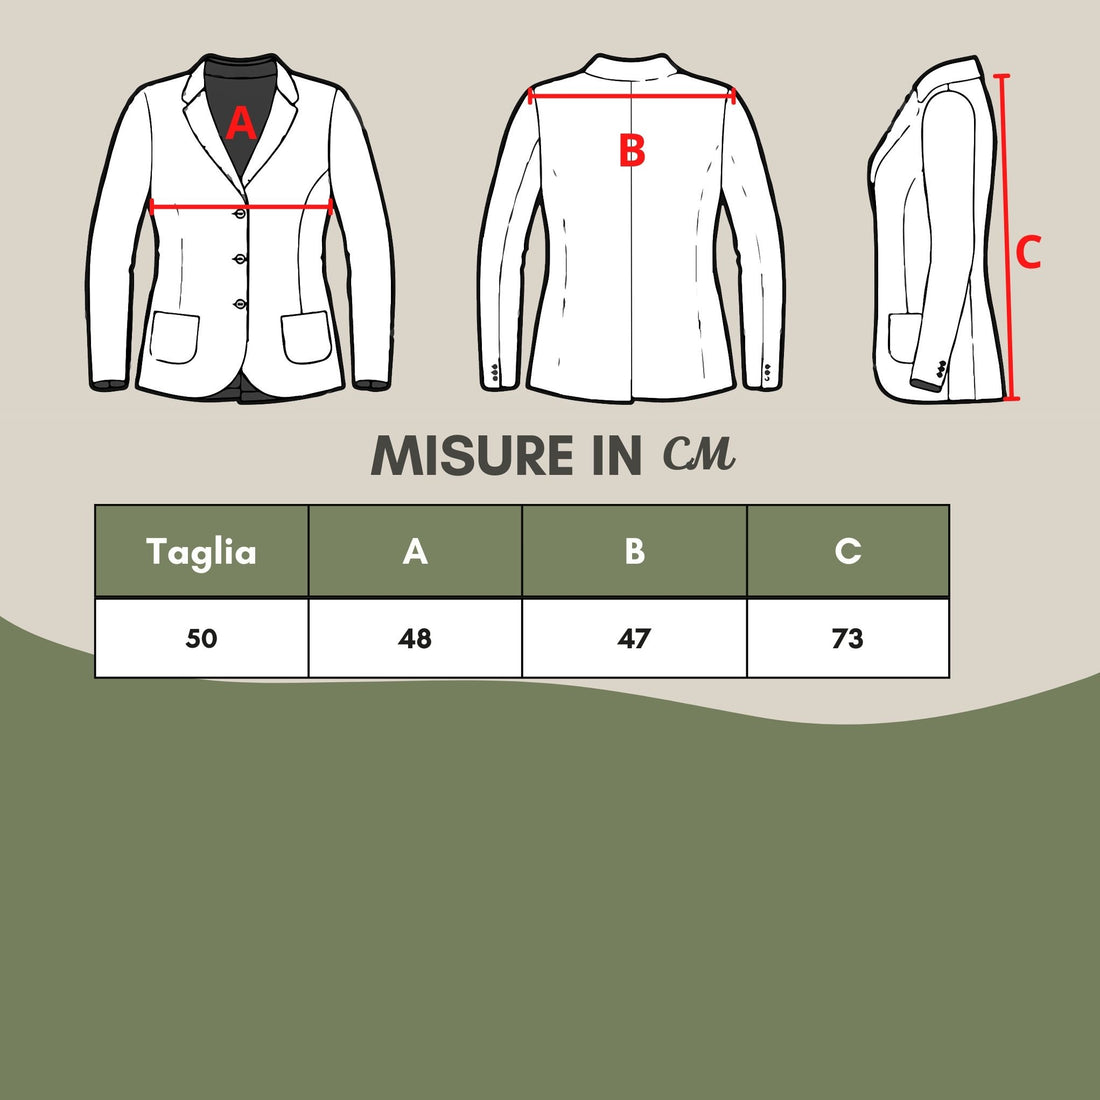 Lardini Beige Linen Deconstructed Jacket